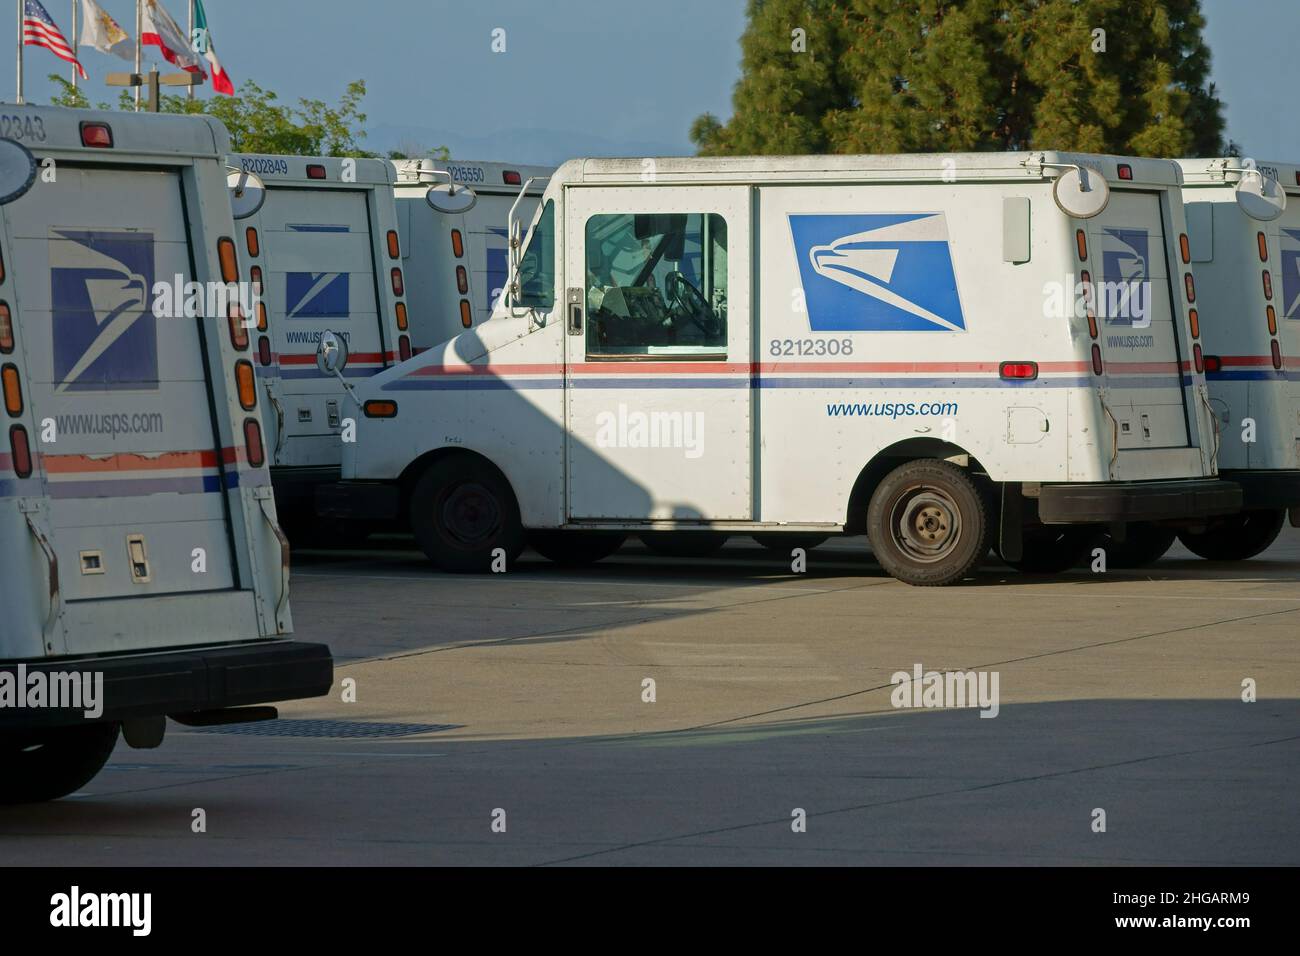 Monterey, CA / USA - 3. April 2021: Es werden Grumman LLV (Long Life Vehicle)-Postautos gezeigt, die vom United States Postal Service (USPS) betrieben werden. Stockfoto